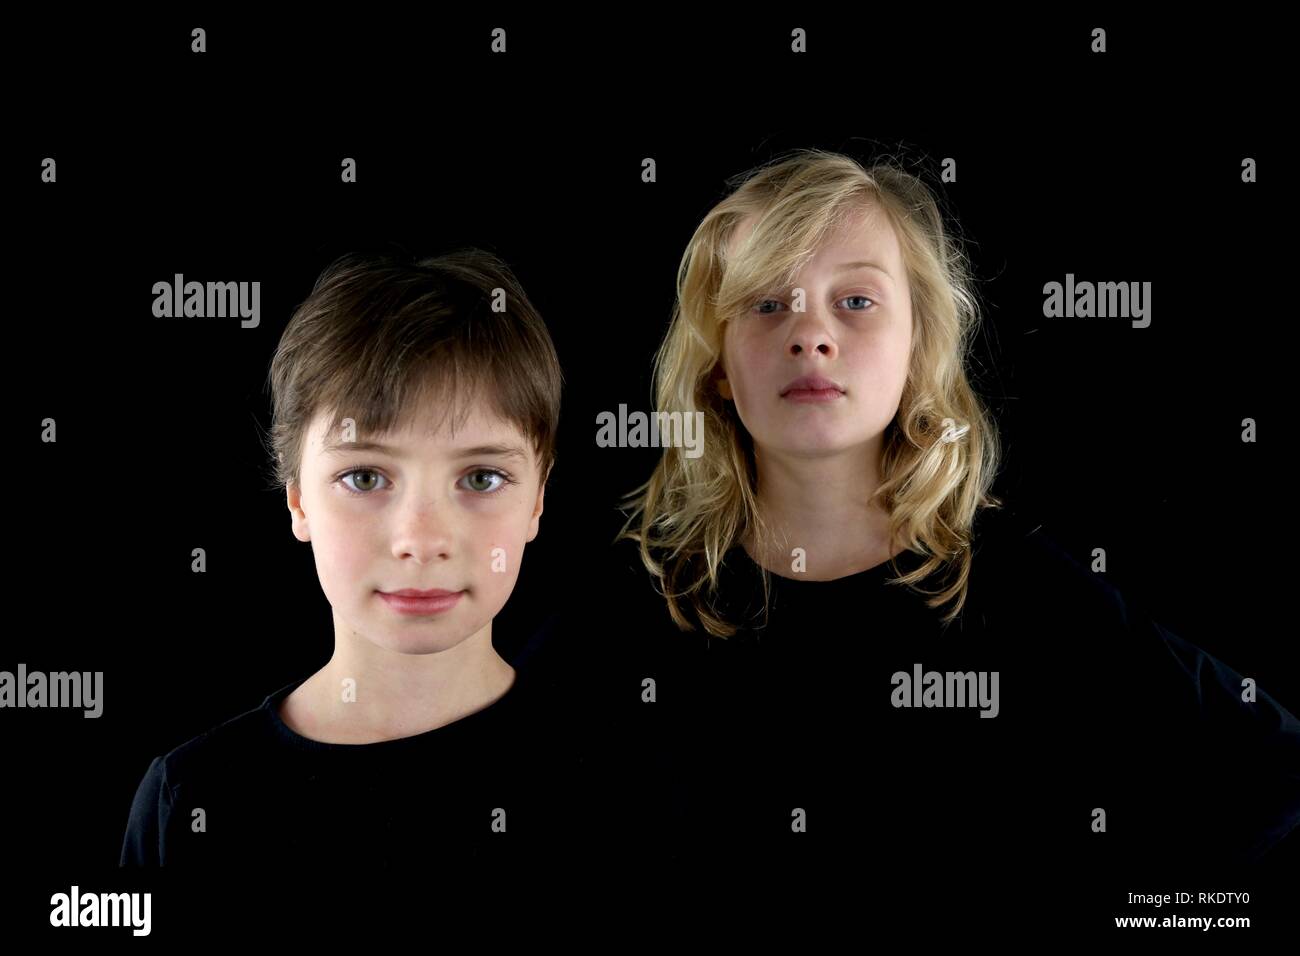 Ritratto di due moody giovani ragazze contro uno sfondo nero Foto Stock